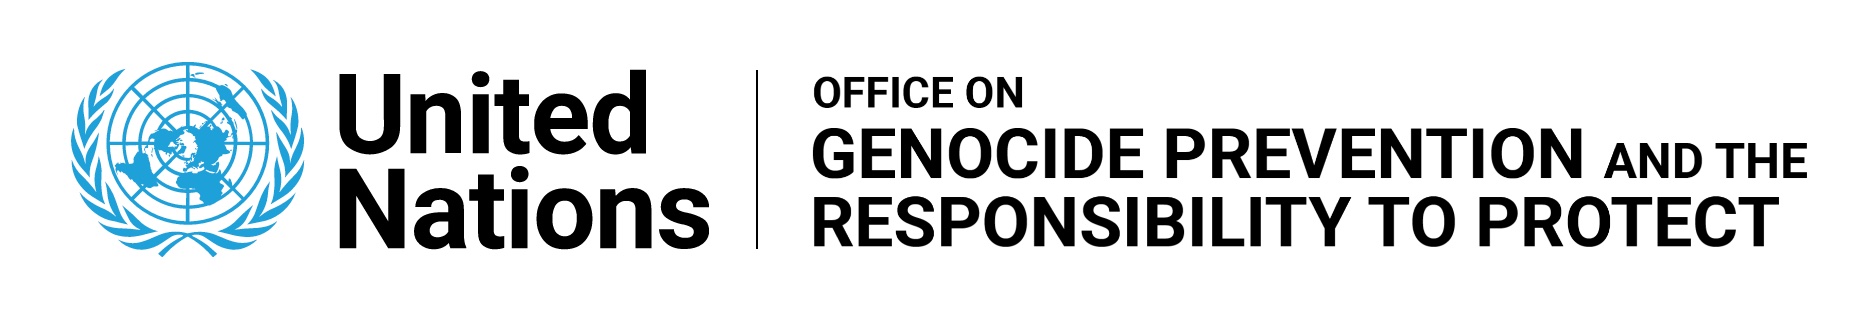 UN Genocide